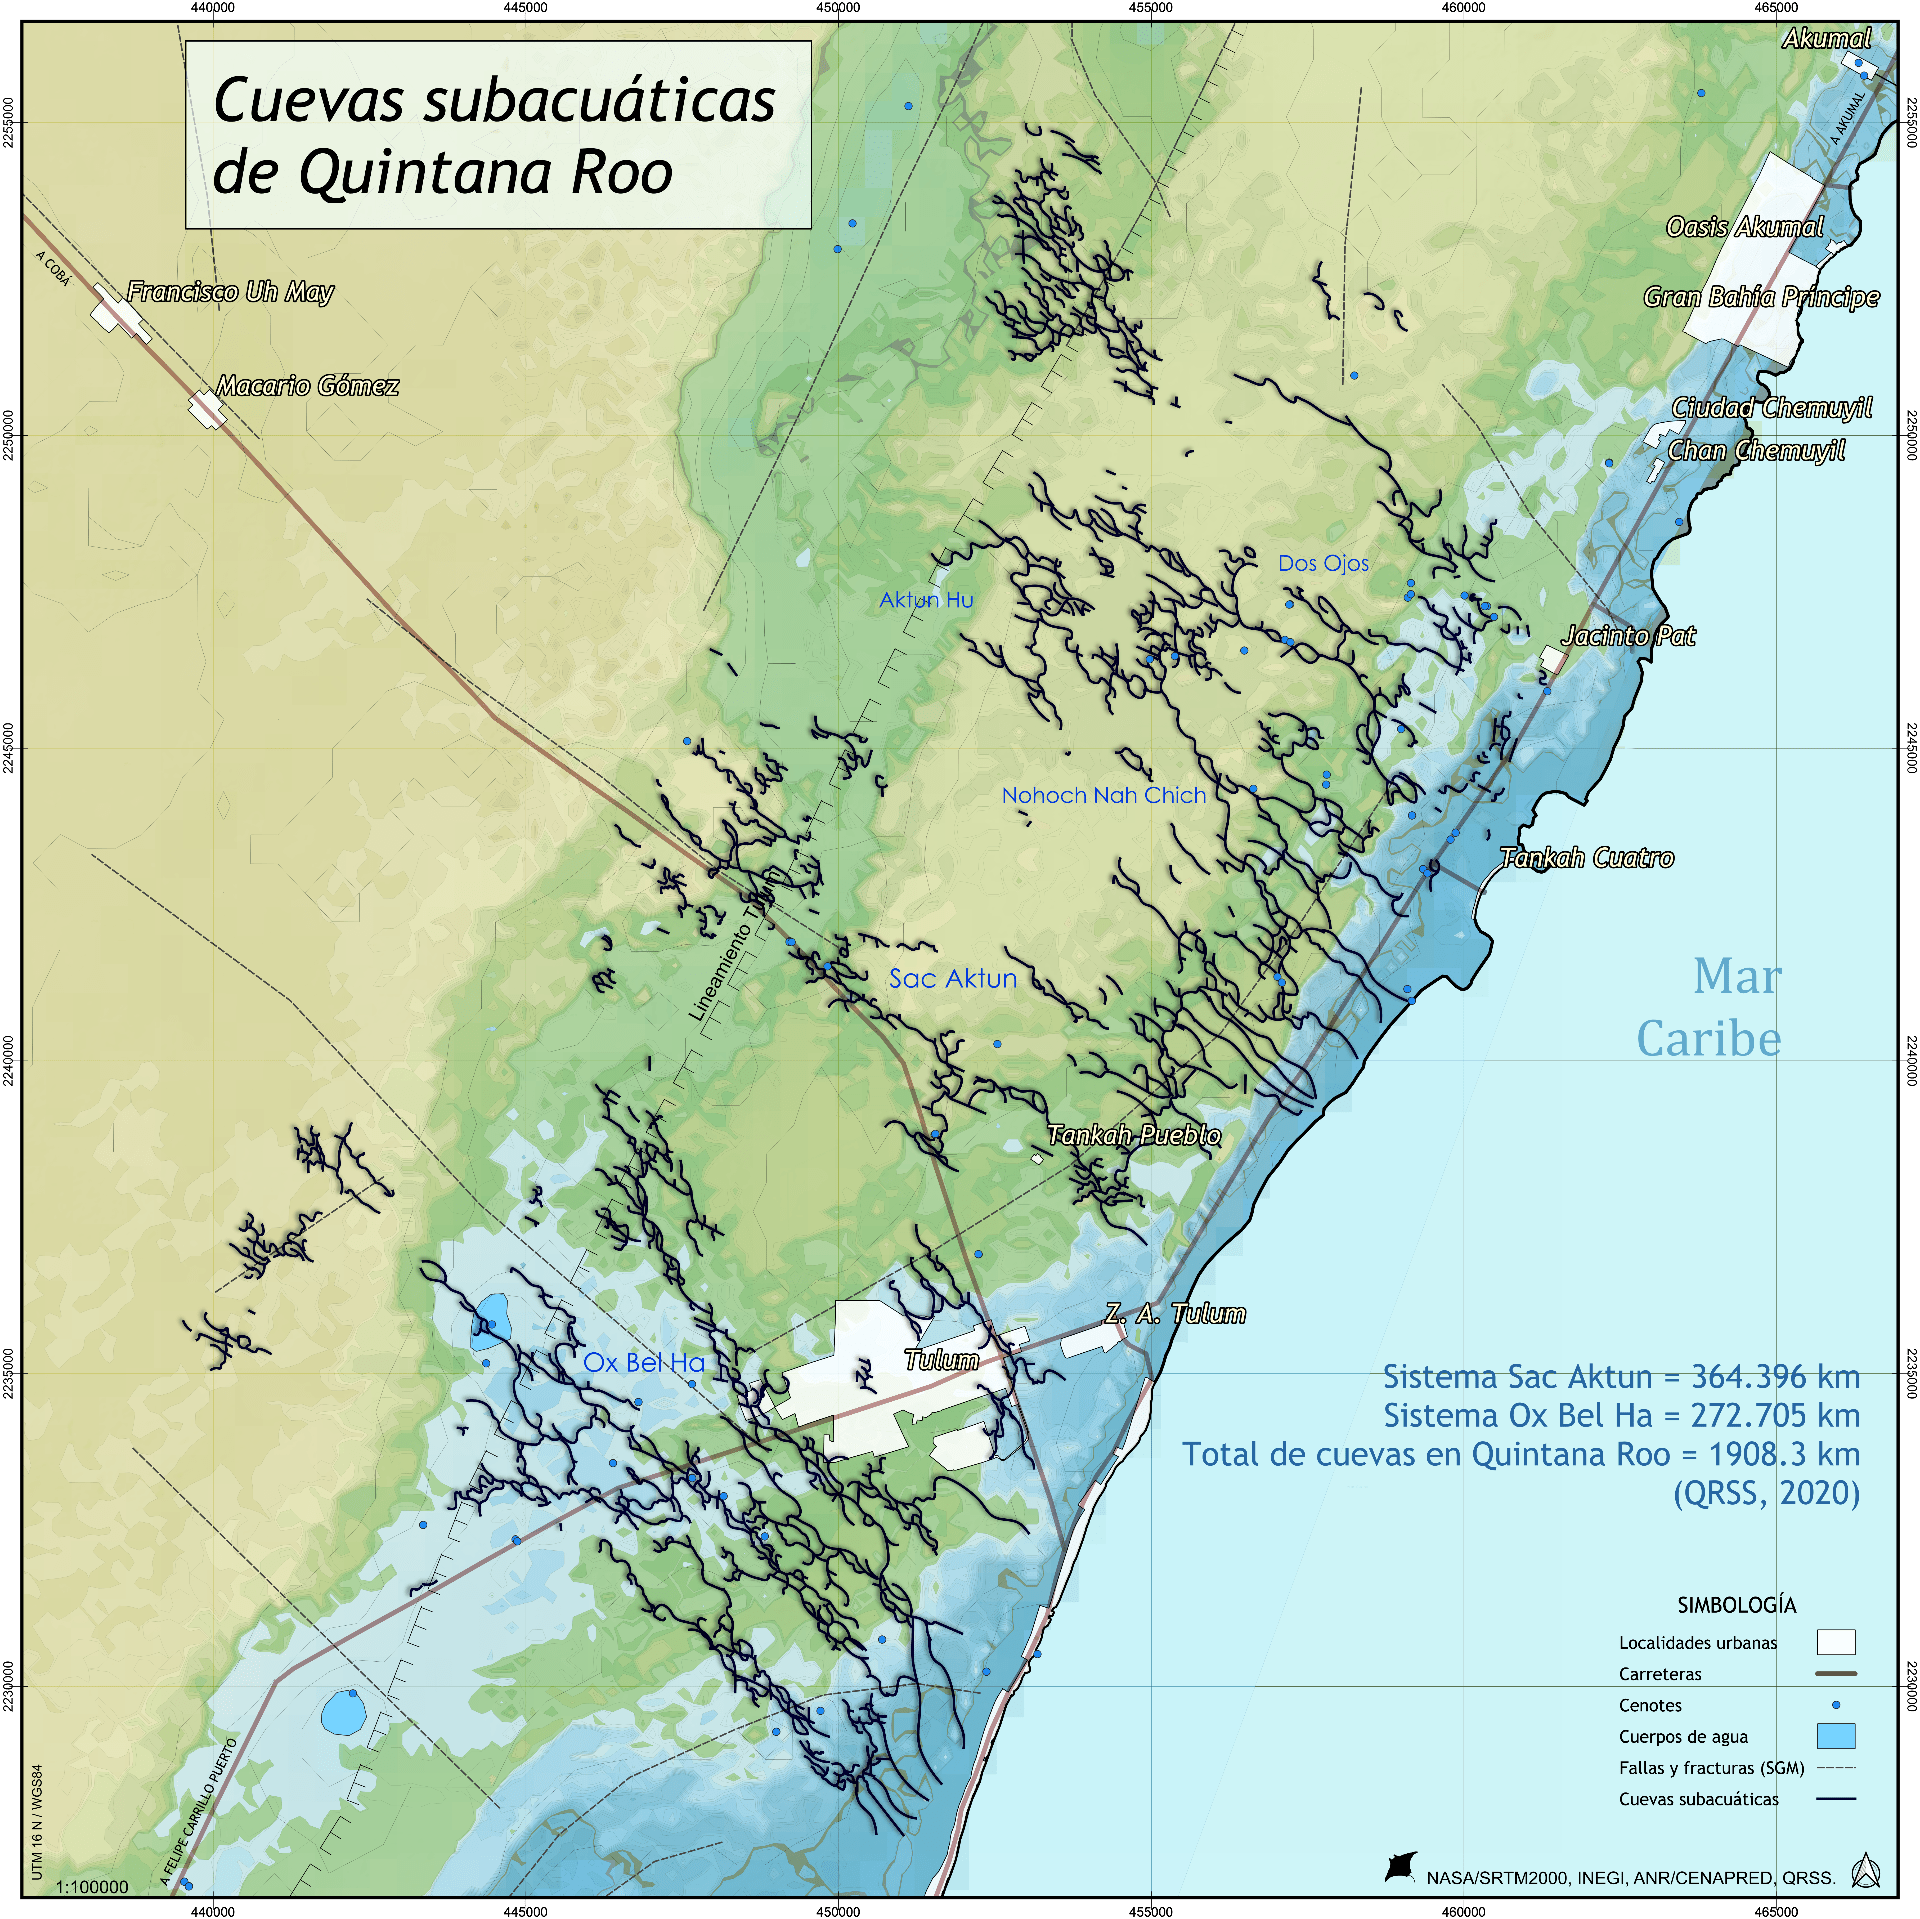 Cuevas subacuáticas de Quintana Roo